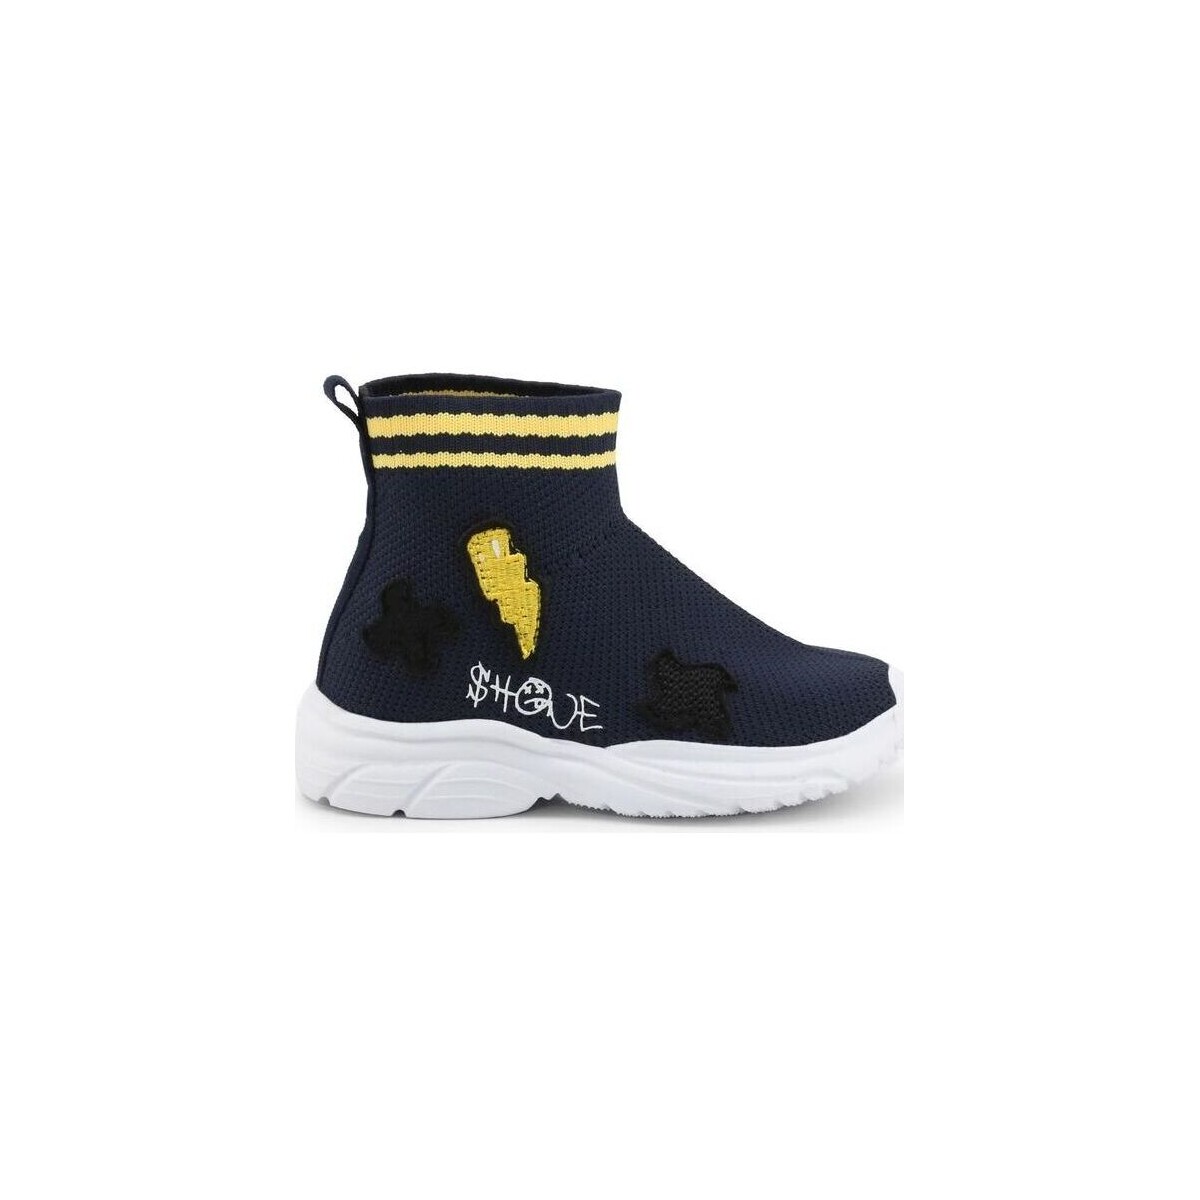 Shone  Sneakers Shone 1601-005 Navy/Yellow